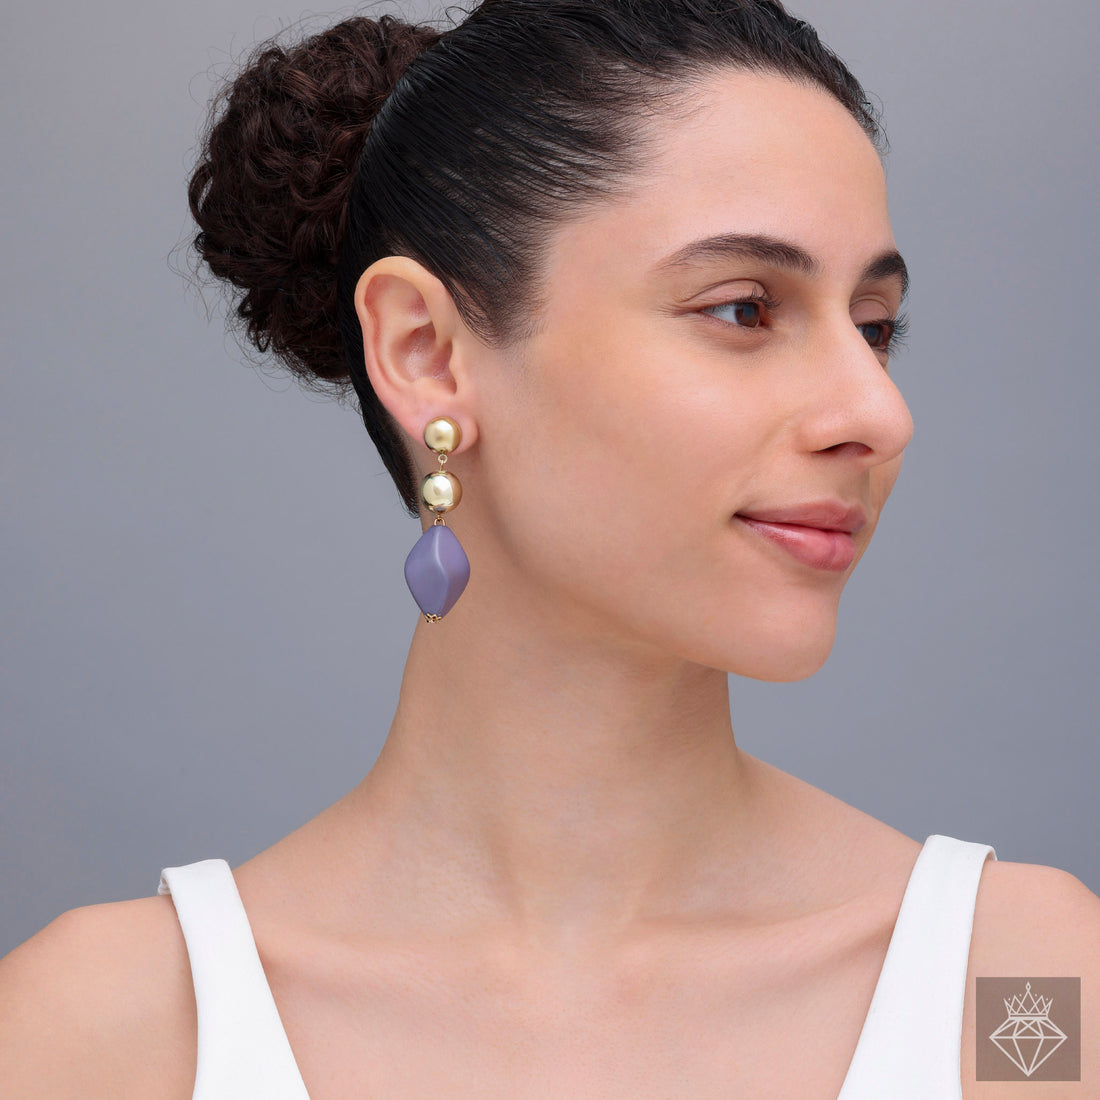 Modern Sophistication: PRAO's Resin Dangle Earrings